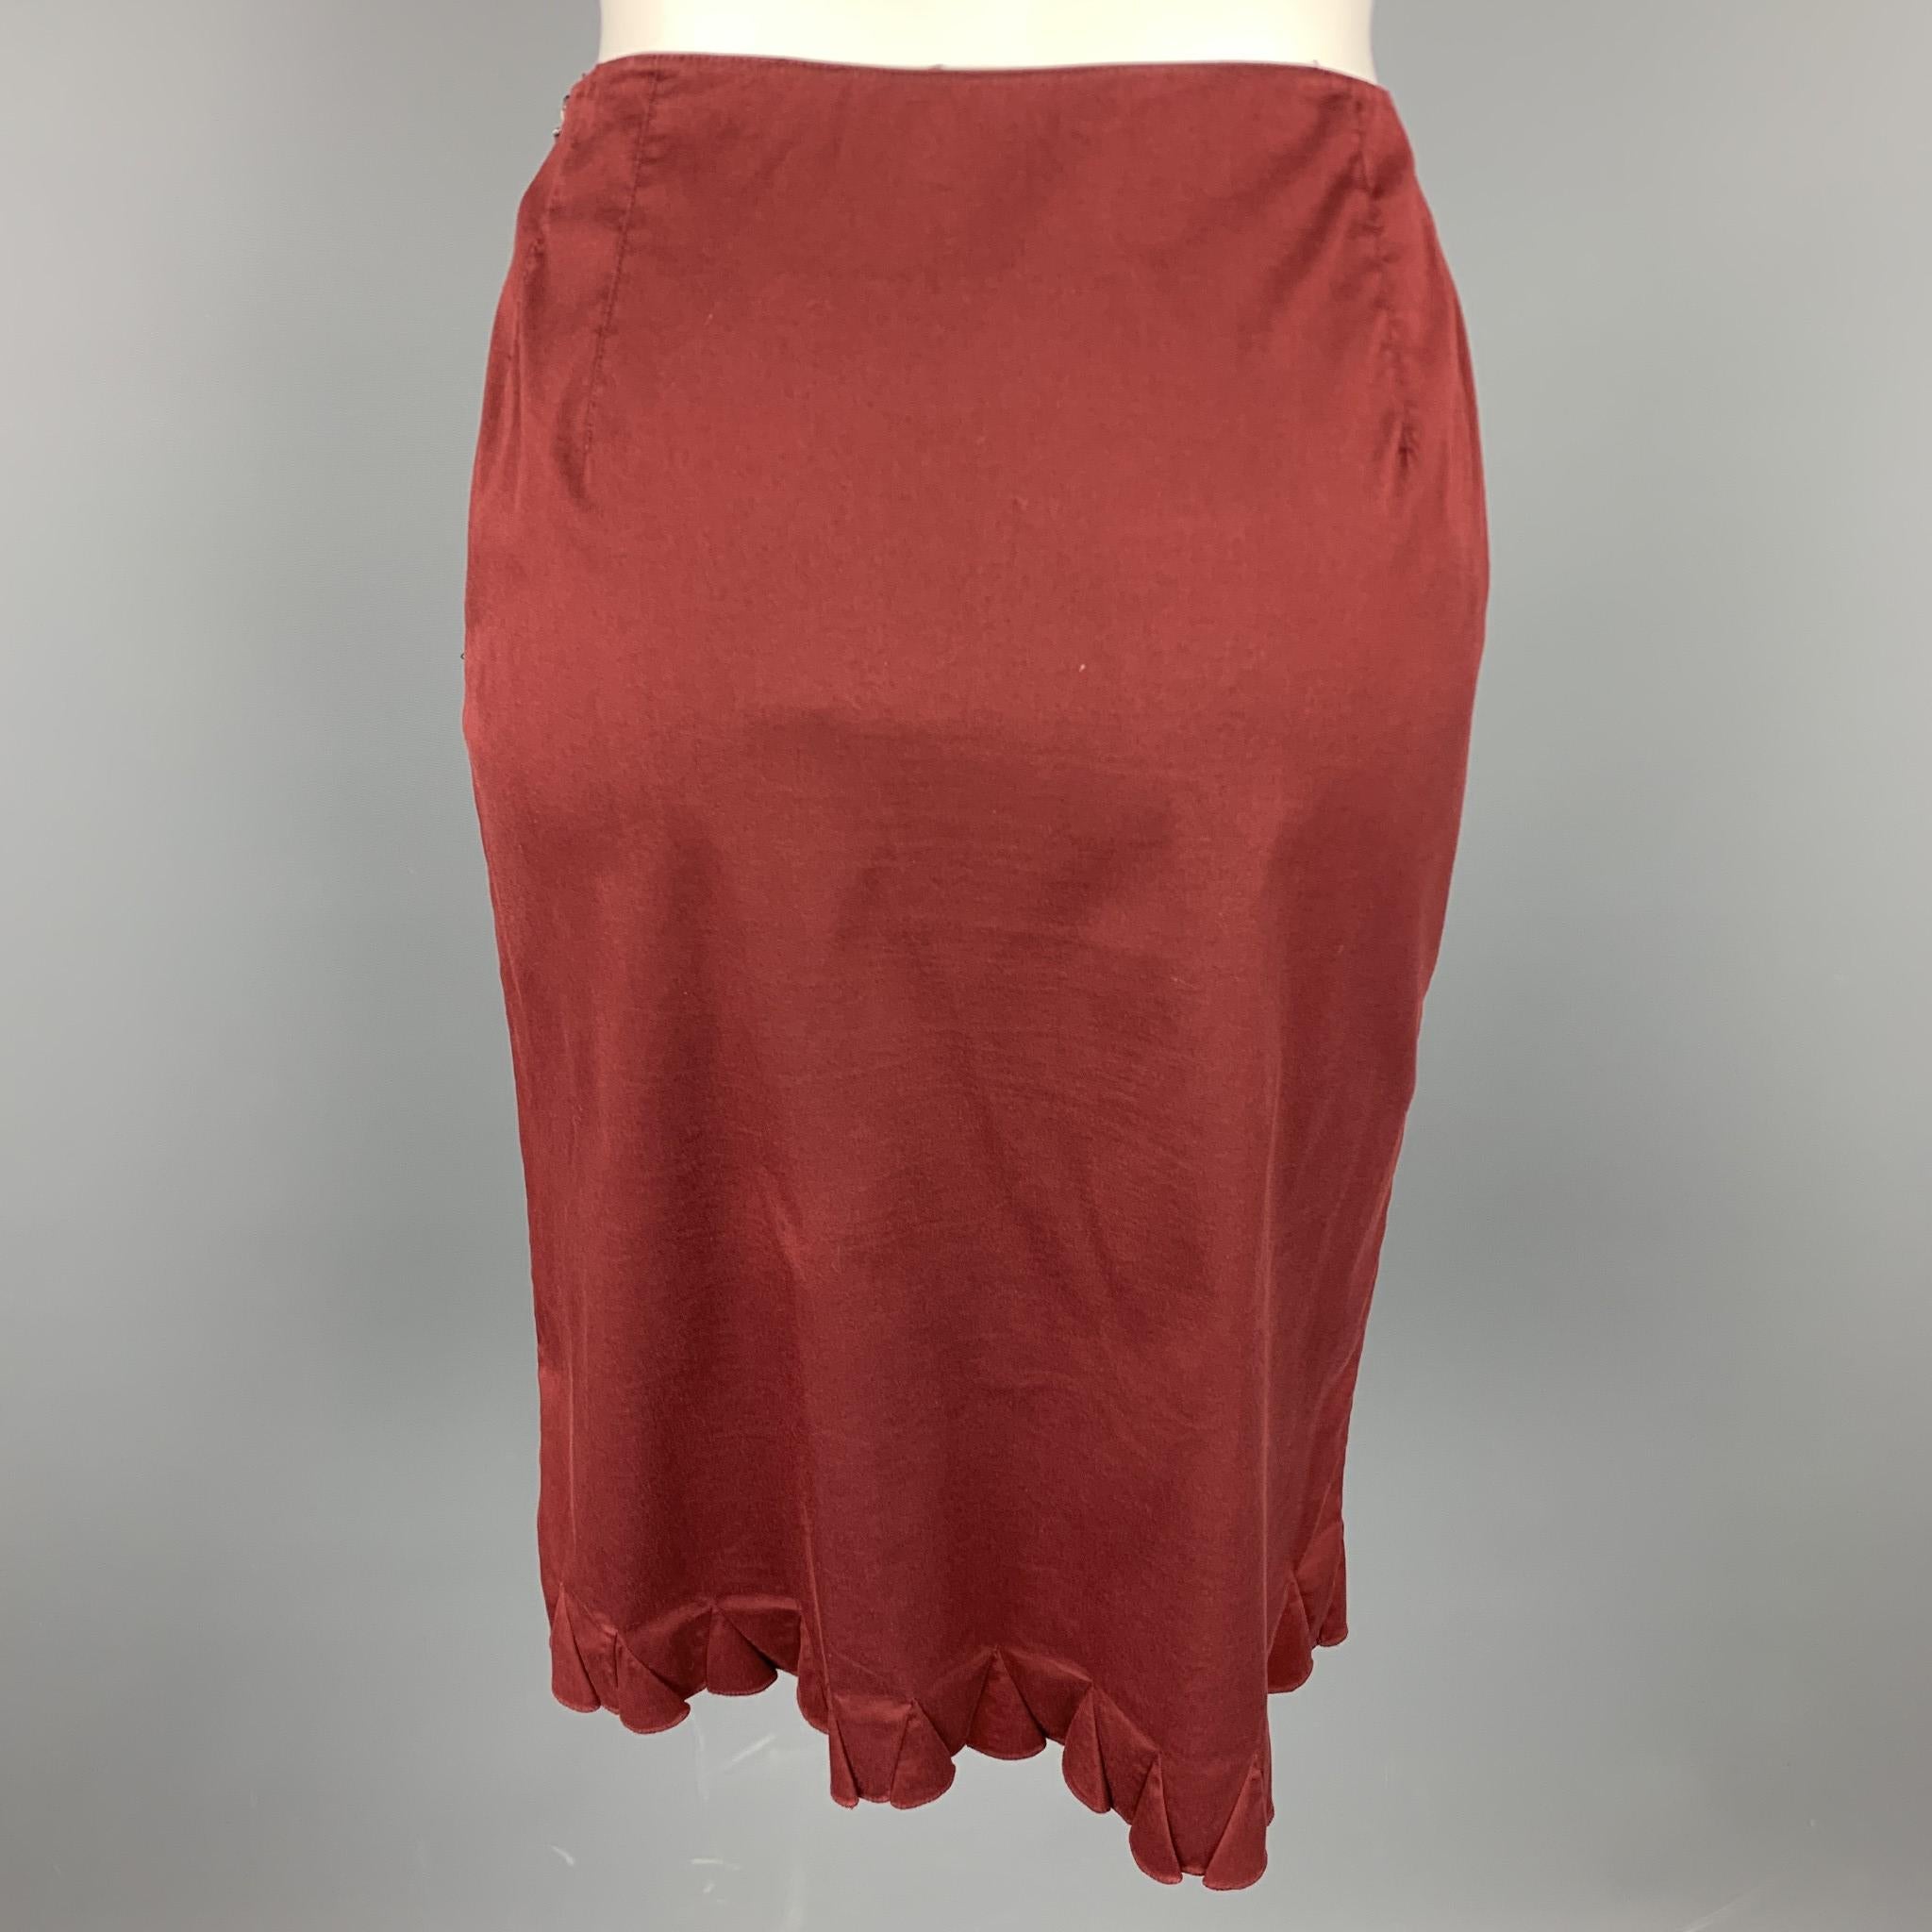 burgundy a line skirt